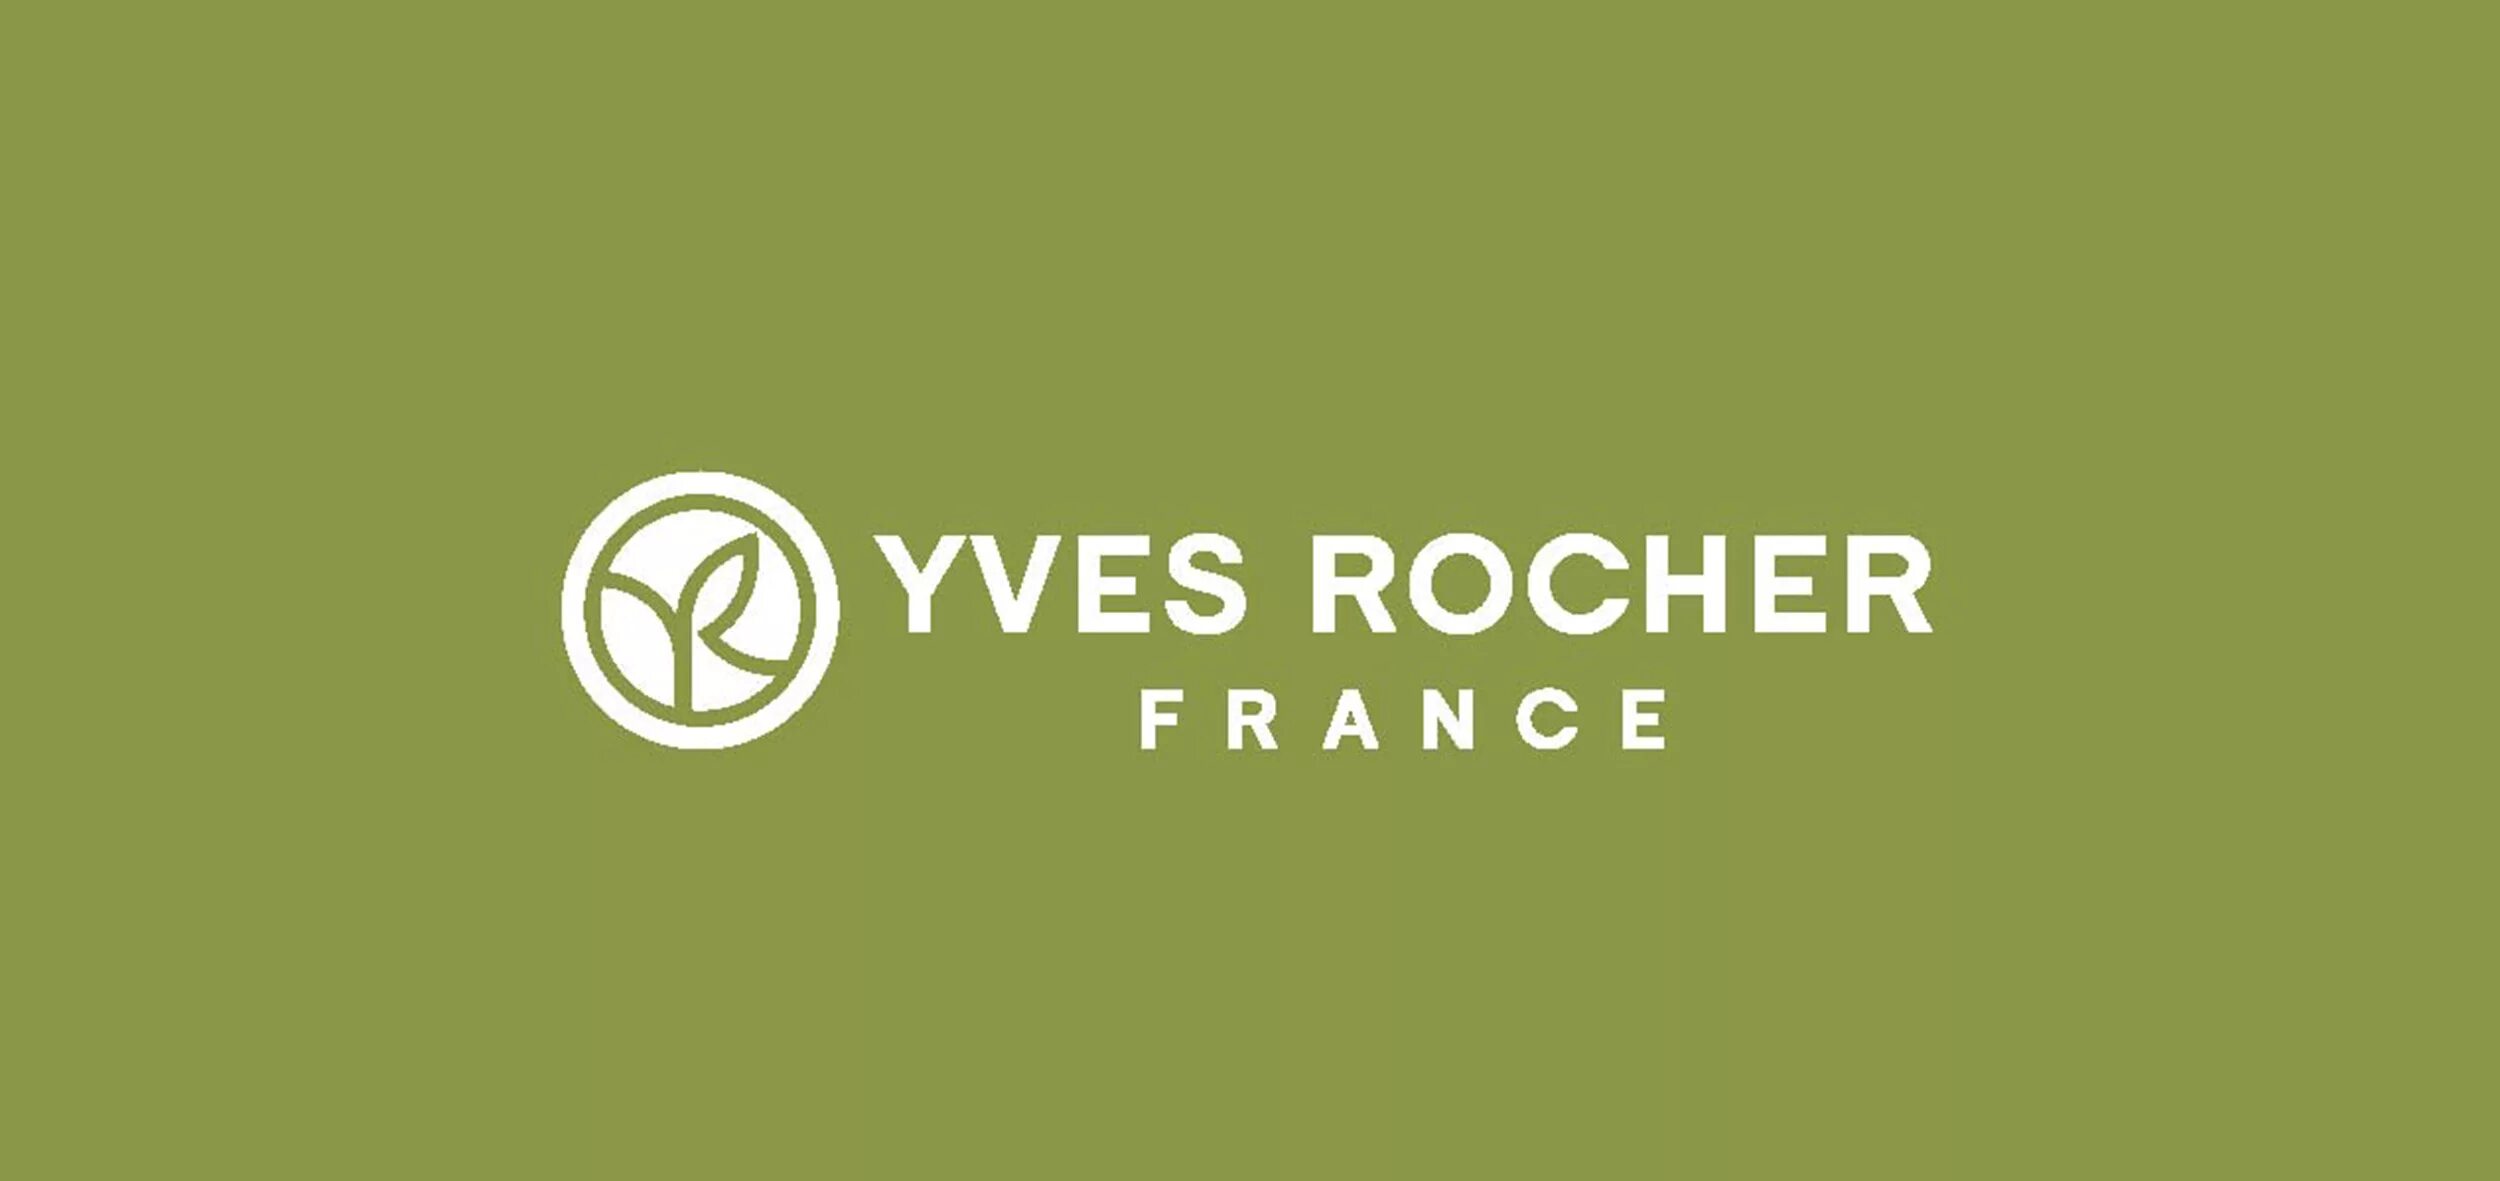 Ив Роше лого. Yves Rocher логотип. Yves Rocher картинки. Yves Rocher France логотип.